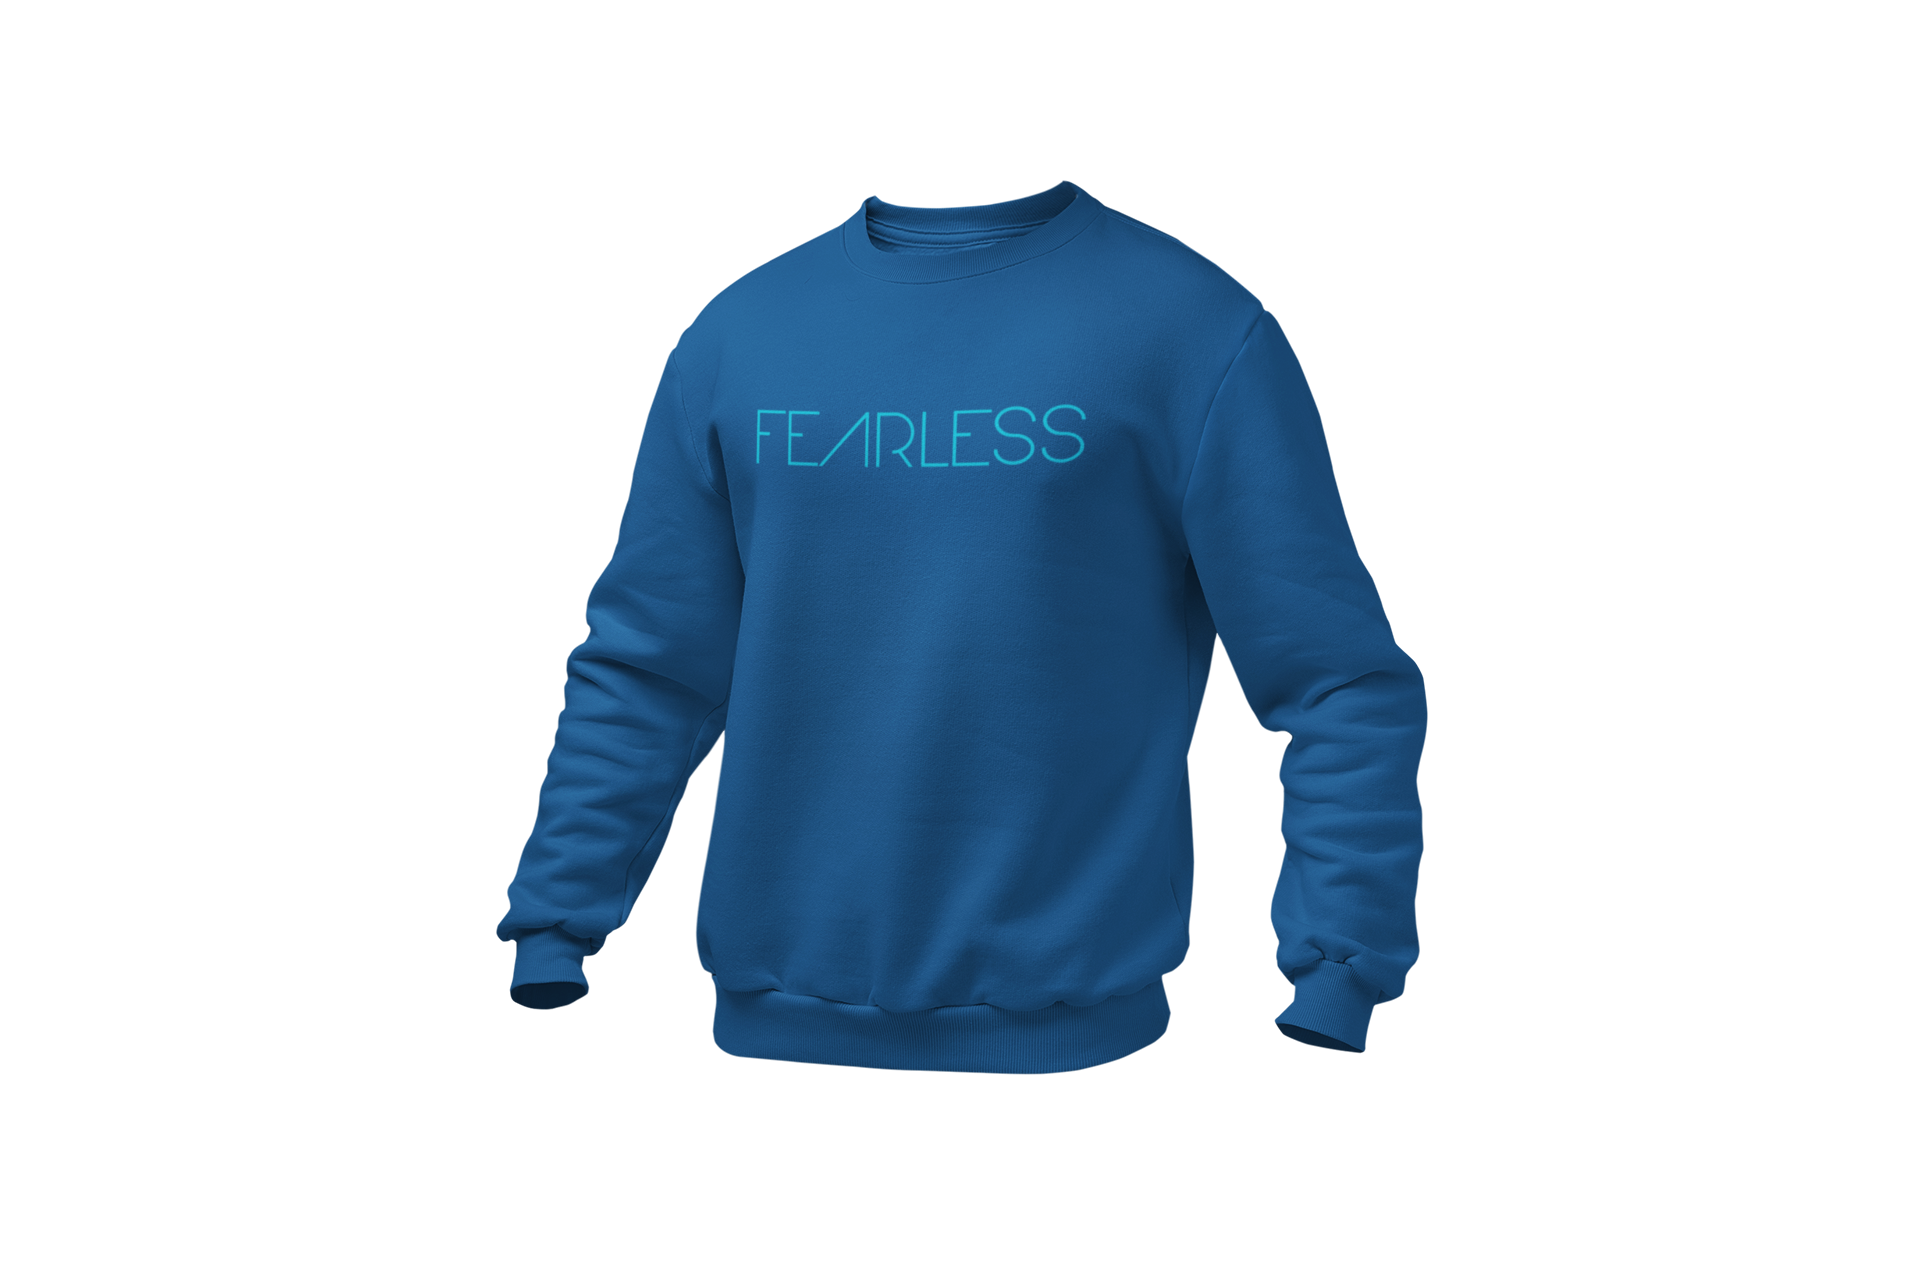 Fearless • Navy Blue + Aqua Sweatshirt